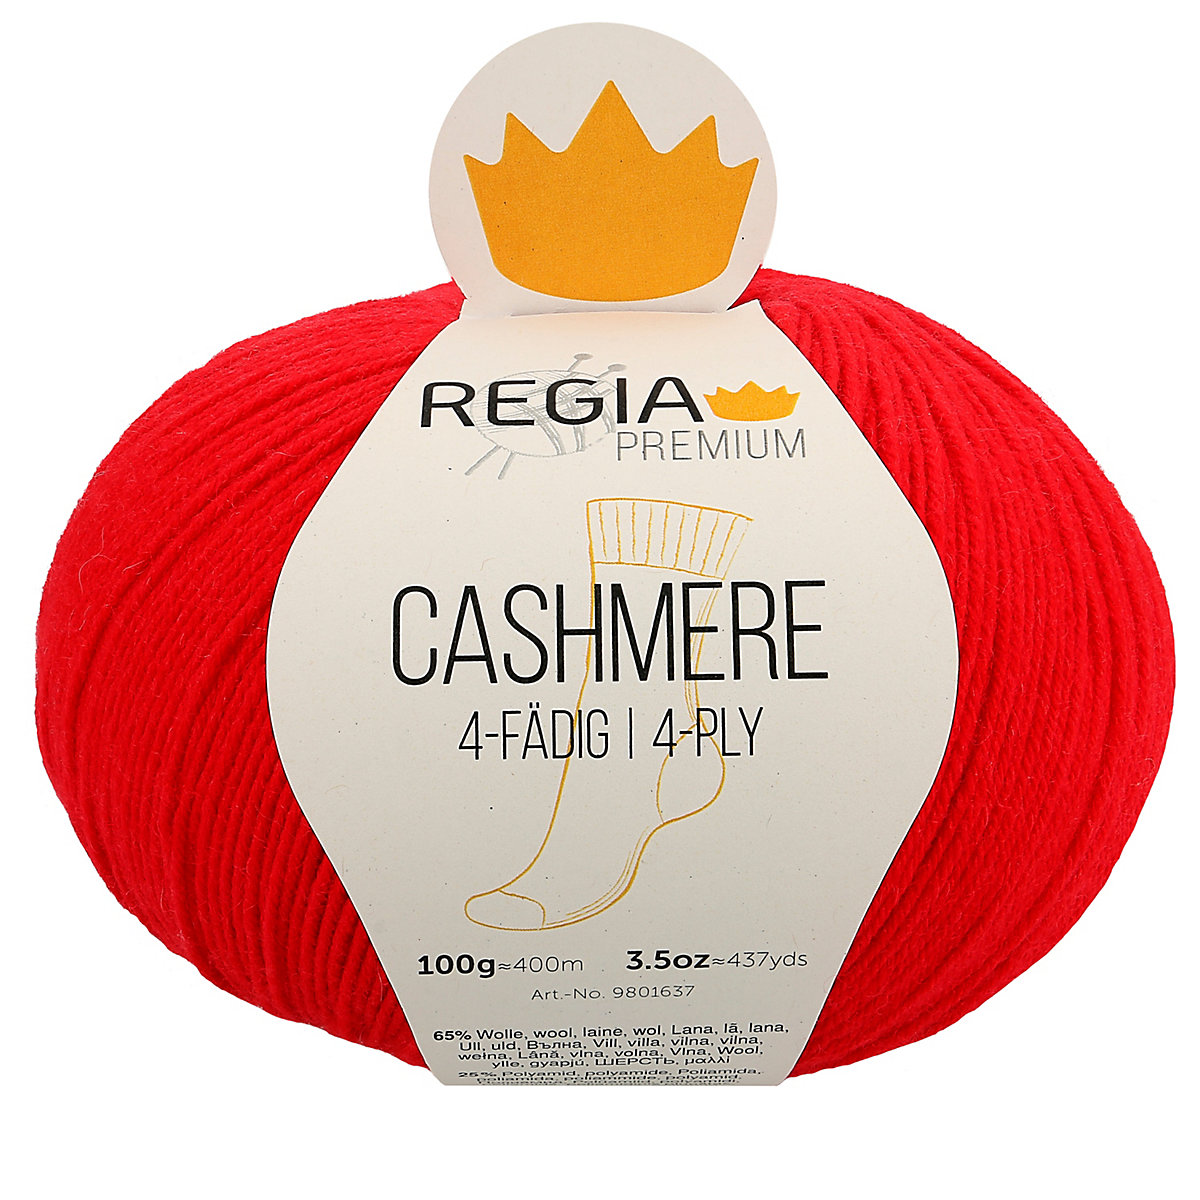 REGIA Handstrickgarne Premium Cashmere 100g Lipstick red